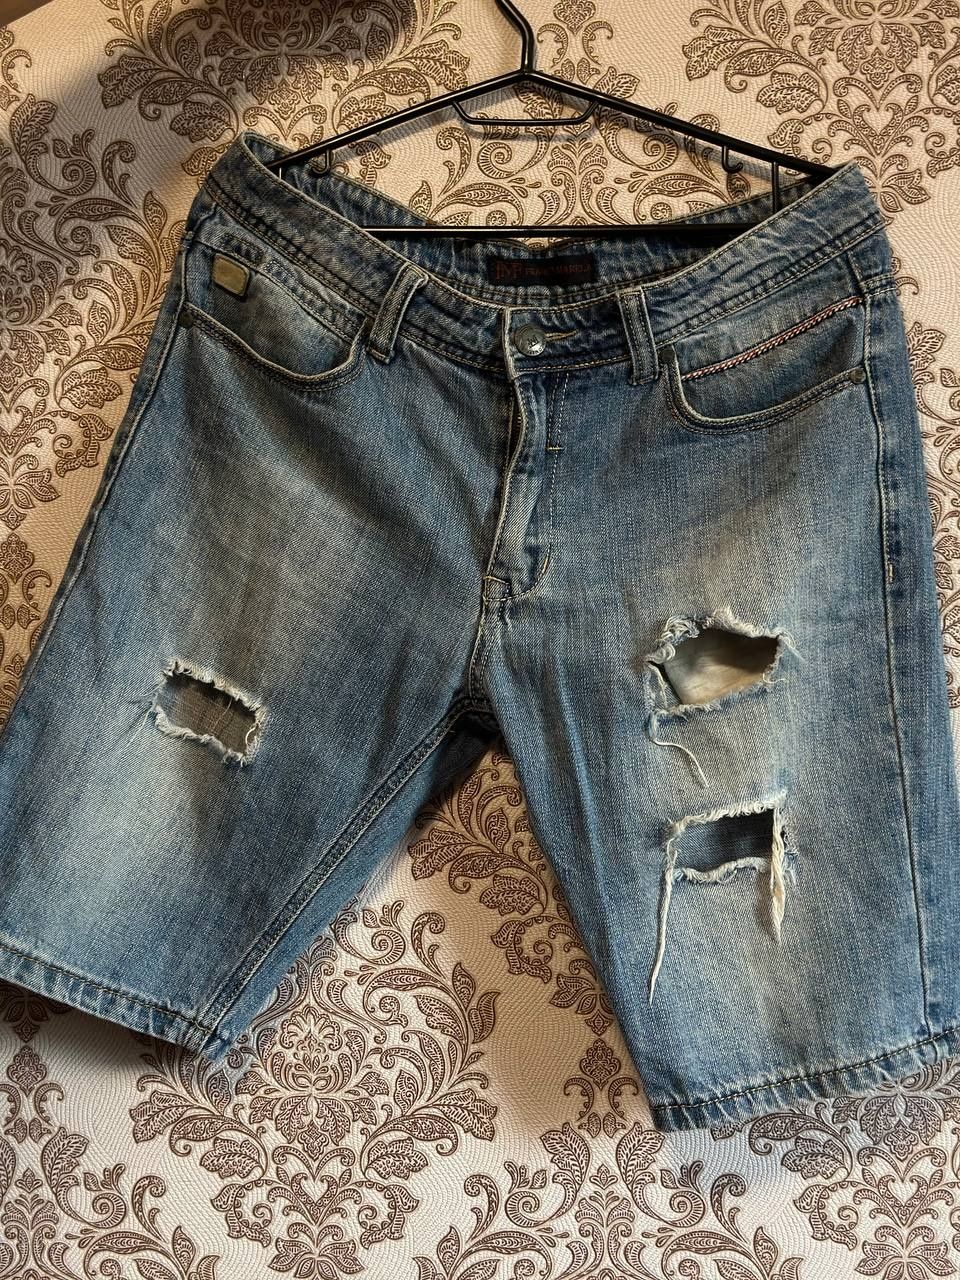 Стильні джинсові шорти